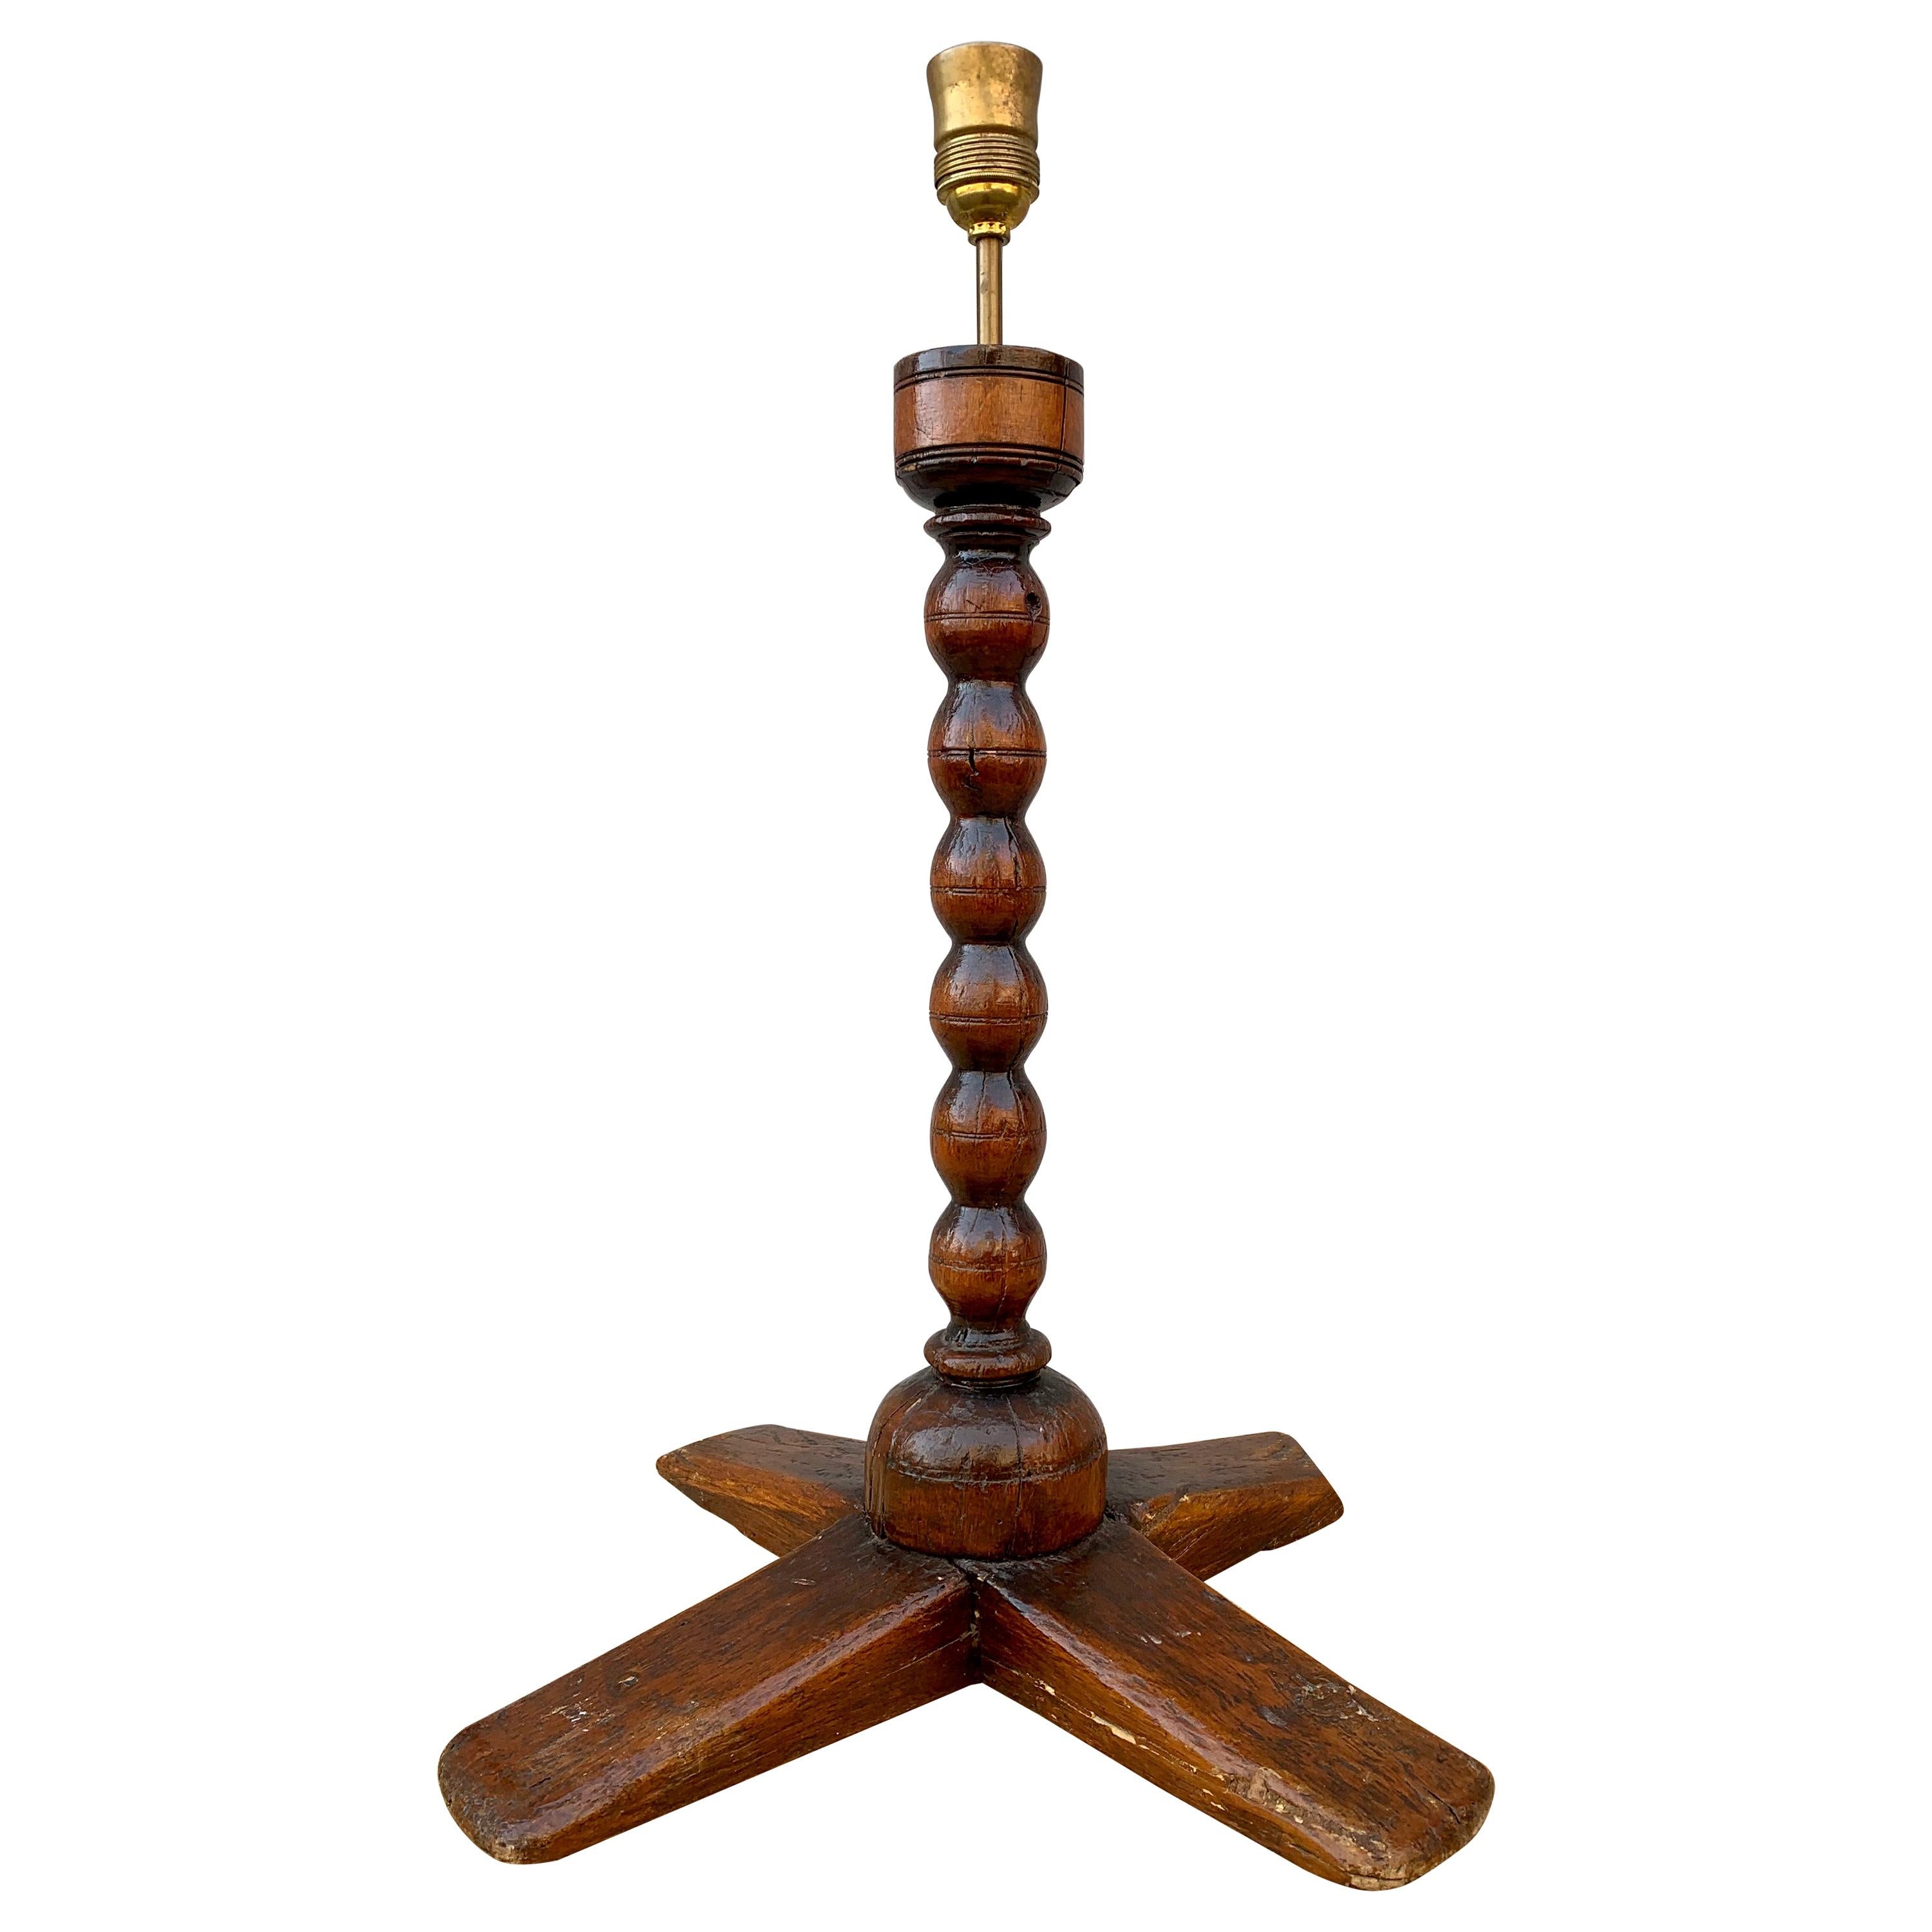 Lampe de table chandelier d'art populaire suédois:: datée de 1737